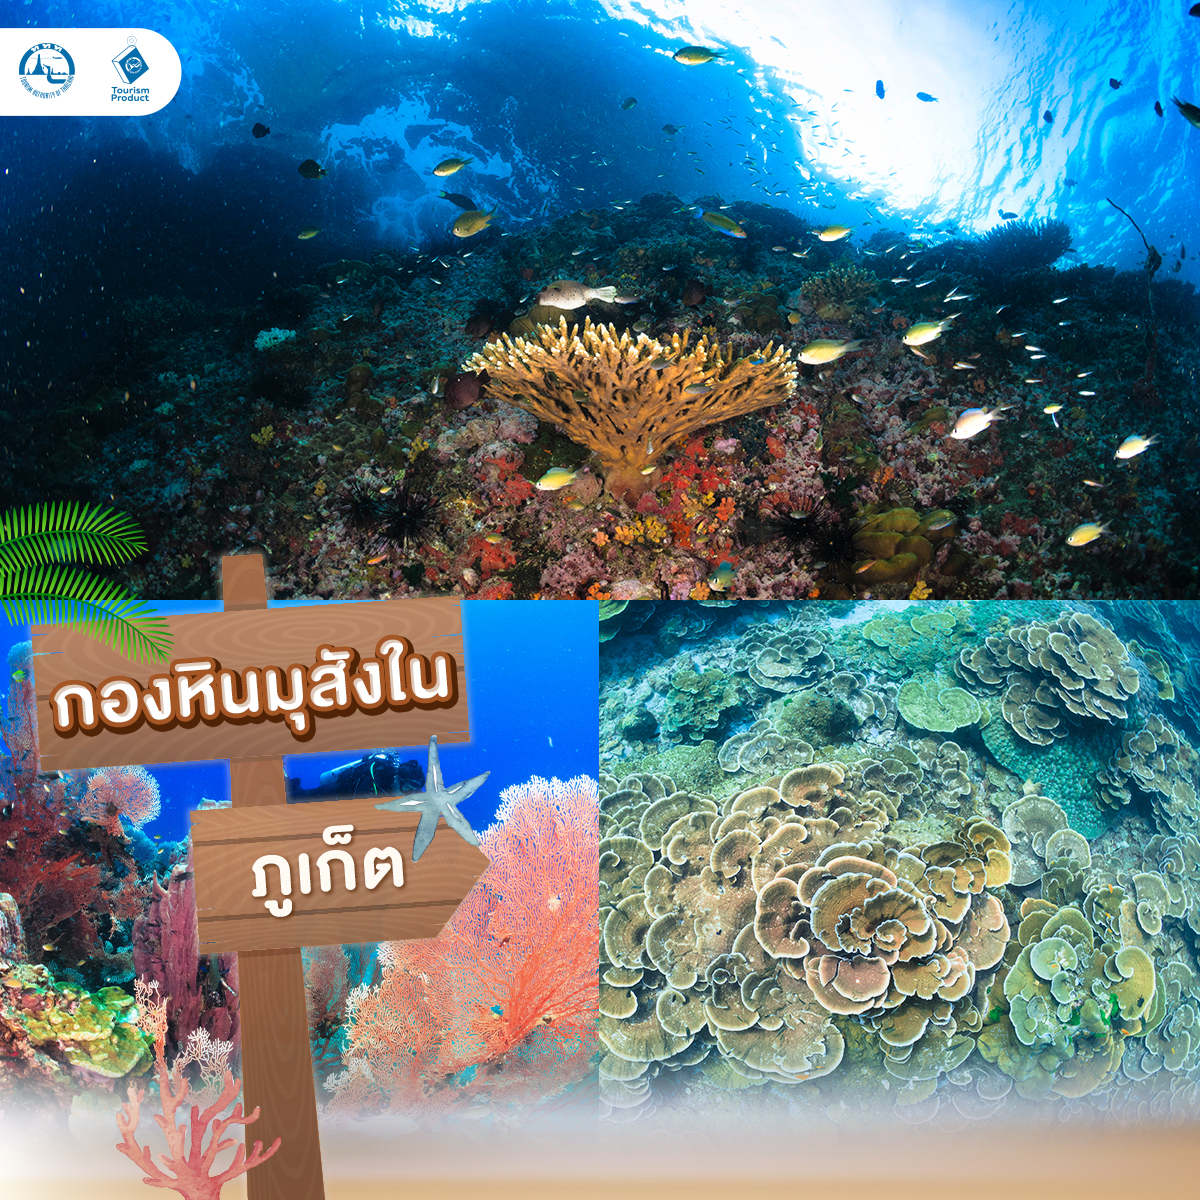 ปัก 5 จุดดำน้ำในไทย สายเเกร่งต้องไป กองหินมุสังใน